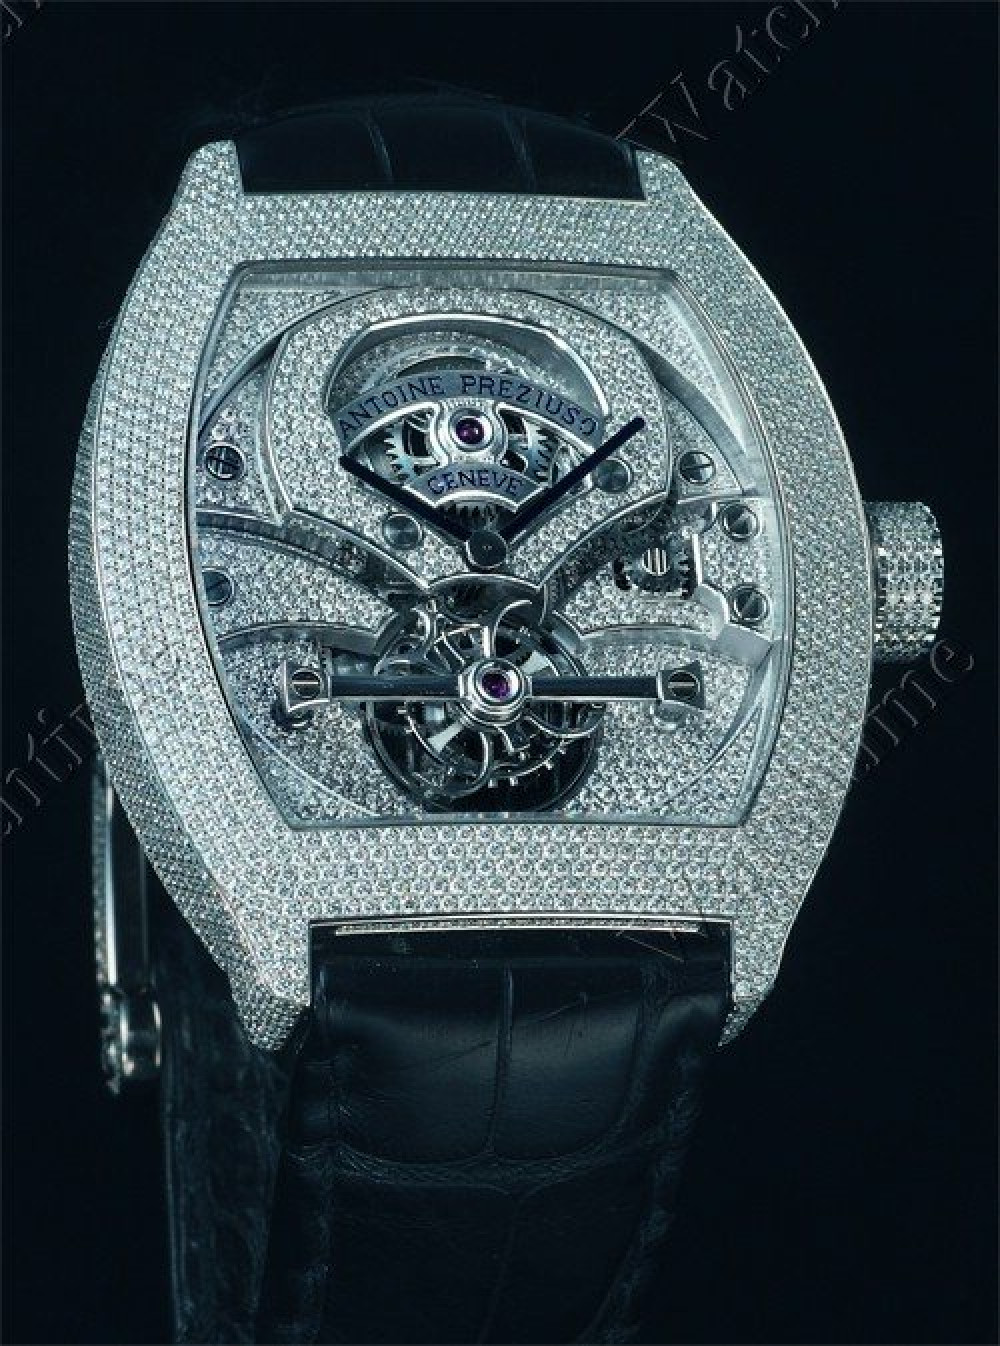 Zegarek firmy Antoine Preziuso, model Stardust